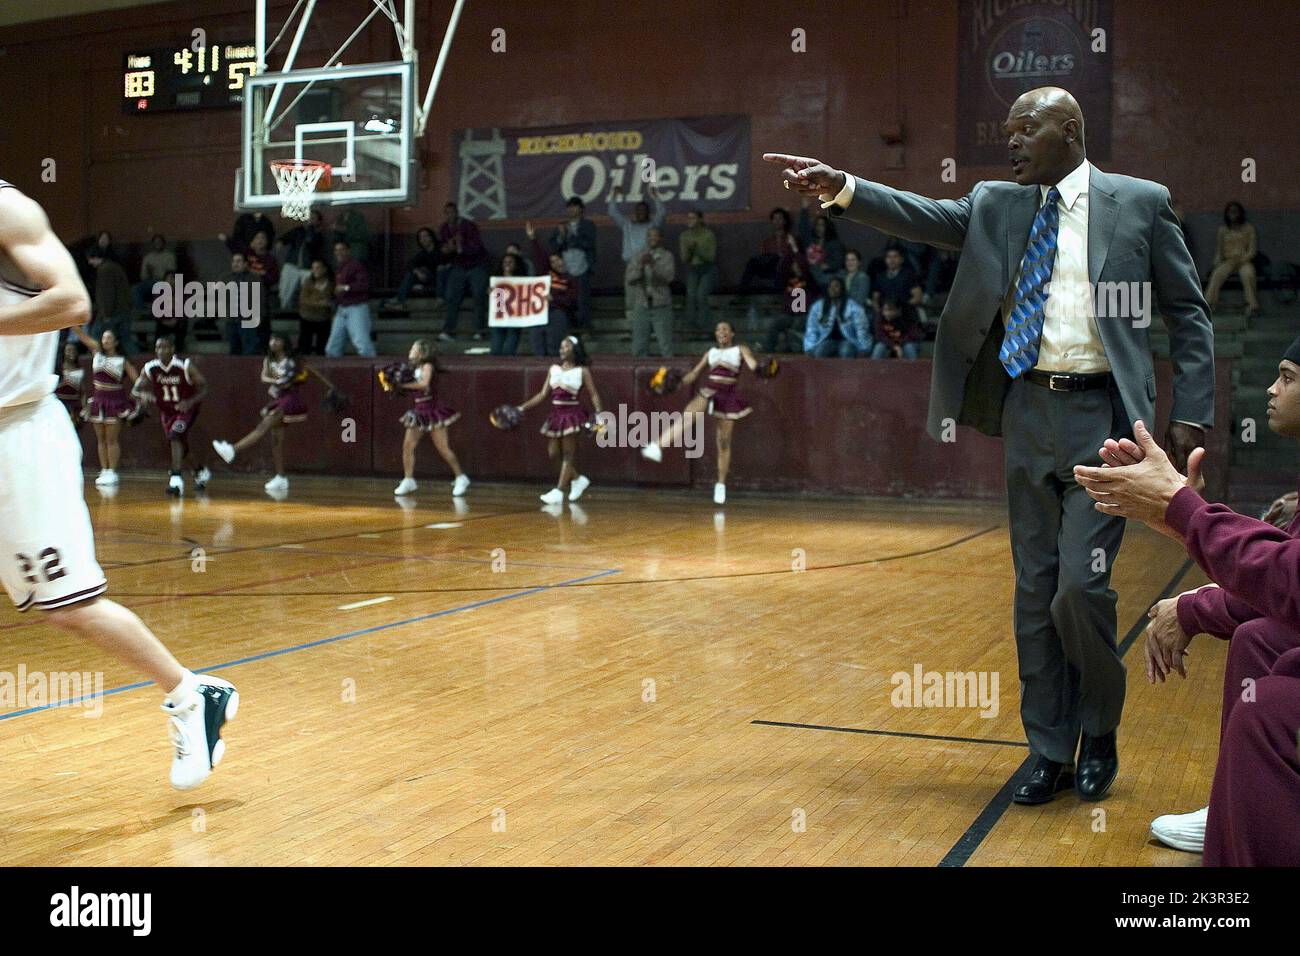 Samuel L. Jackson in the true story Coach Carter about Richmond High School  basketball coach Ken Carter.